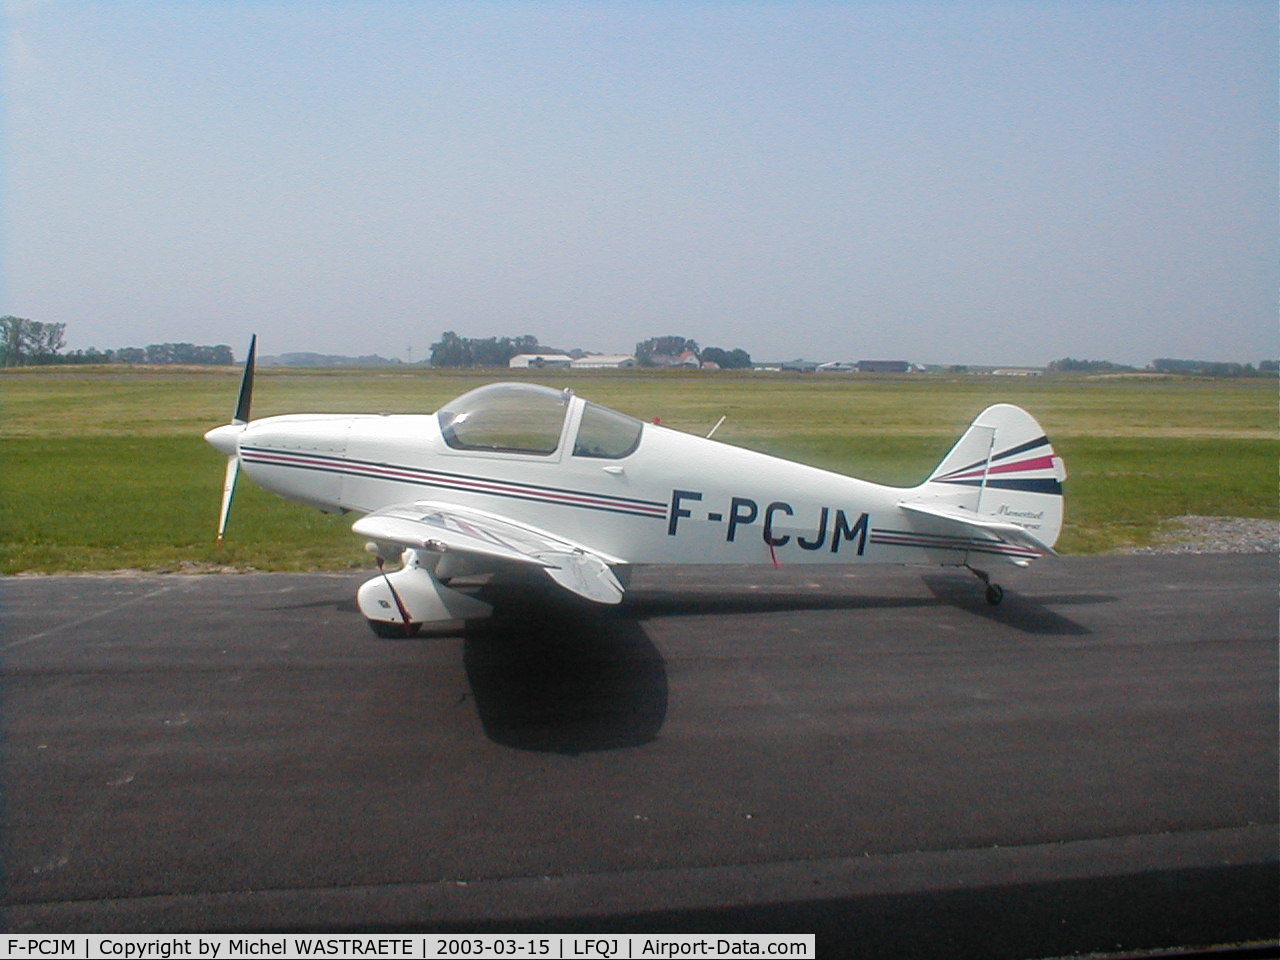 F-PCJM, Nicollier HN-700 Menestrel II C/N 147, Cet avion a été construit en CNRA par Mr Jaques MAYEUX et Michel WASTRAETE. Il aura fallu 6ans pour l'achever et fit son premier vol au début des année 2000.